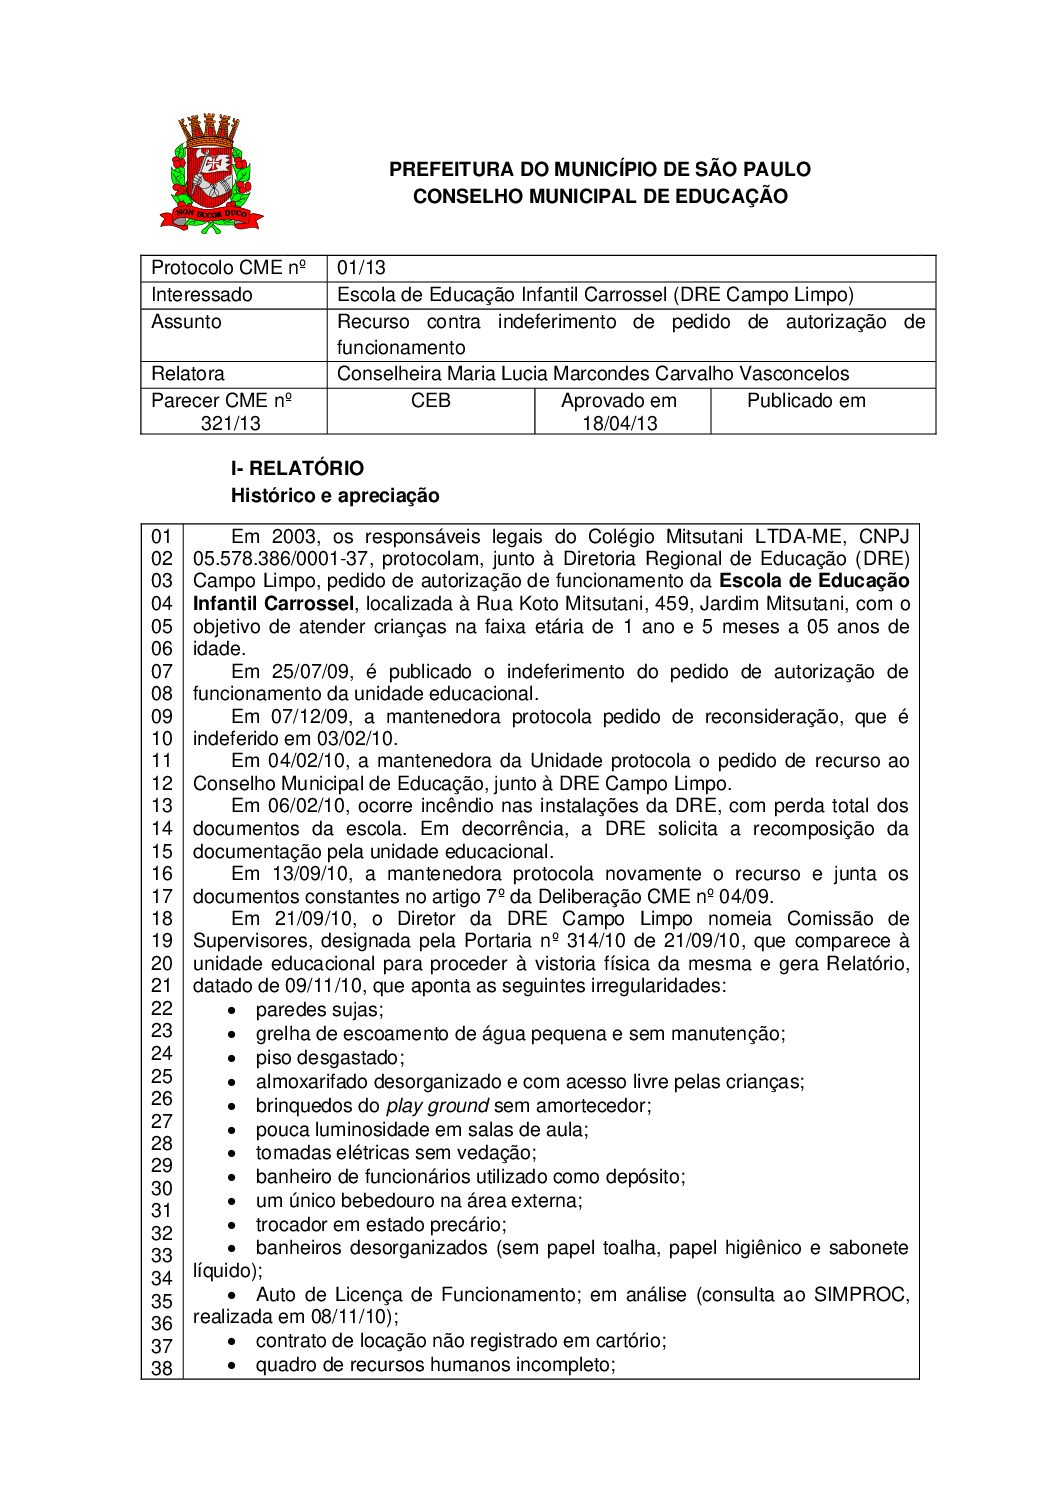 Parecer CME nº 321/2013 - Escola de Educação Infantil Carrossel (DRE Campo Limpo) - Recurso contra indeferimento de pedido de autorização de funcionamento 